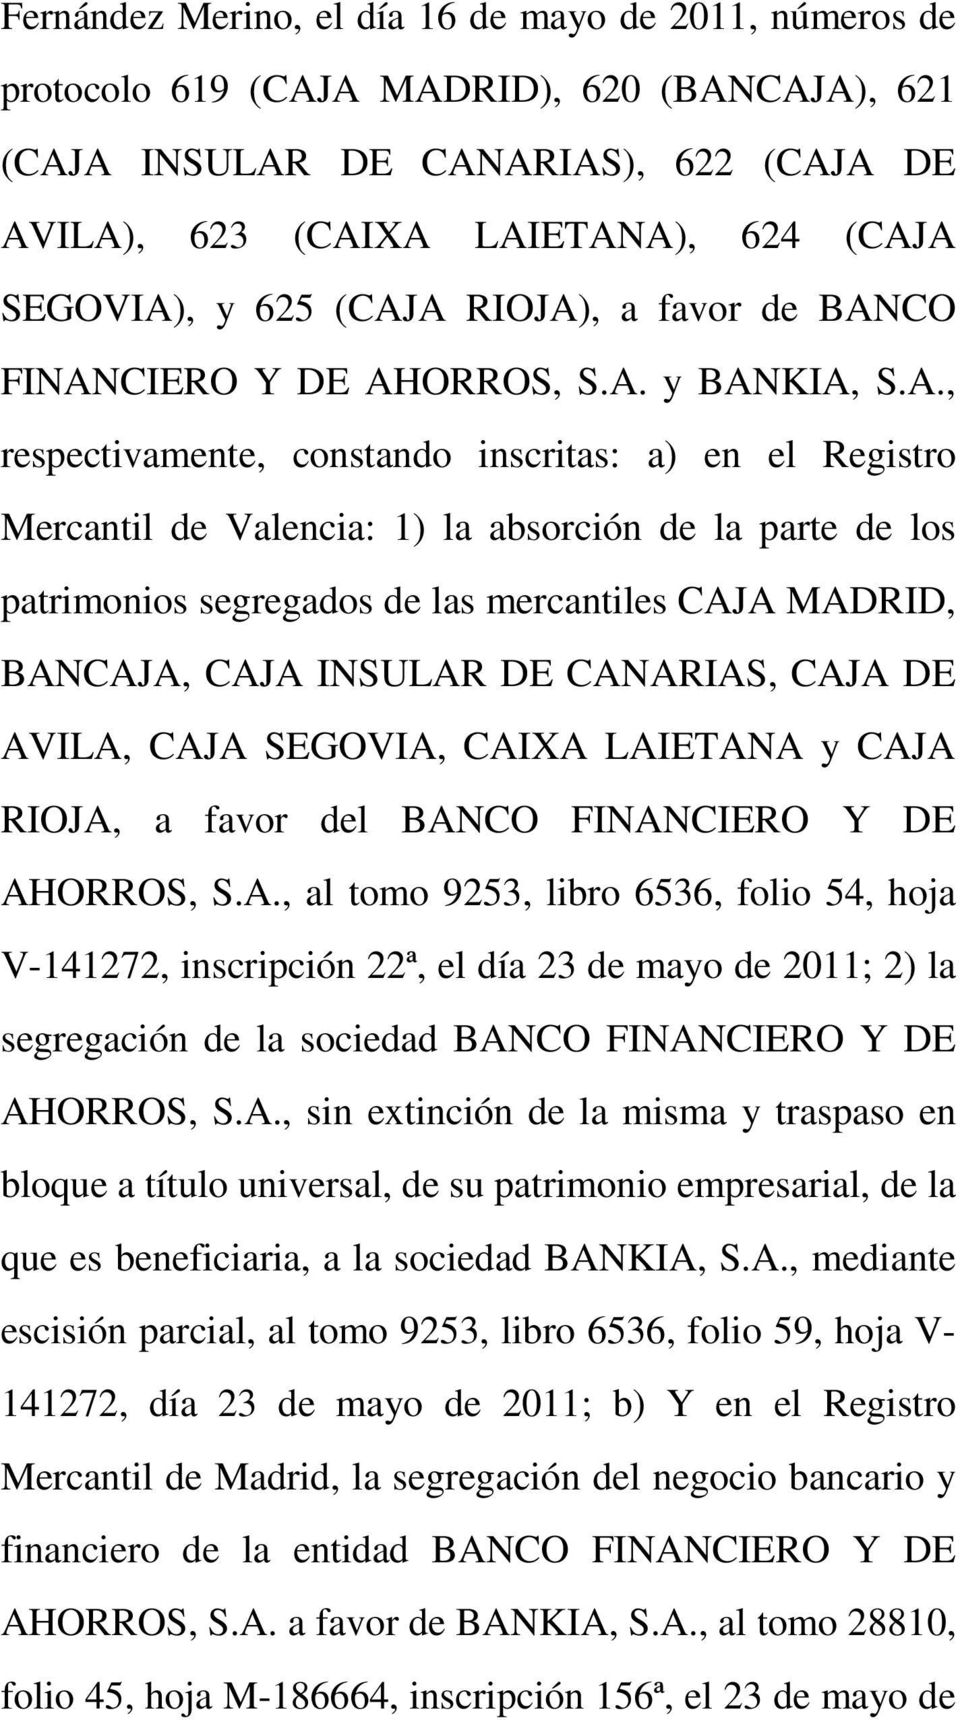 A RIOJA), a favor de BANCO FINANCIERO Y DE AHORROS, S.A. y BANKIA, S.A., respectivamente, constando inscritas: a) en el Registro Mercantil de Valencia: 1) la absorción de la parte de los patrimonios